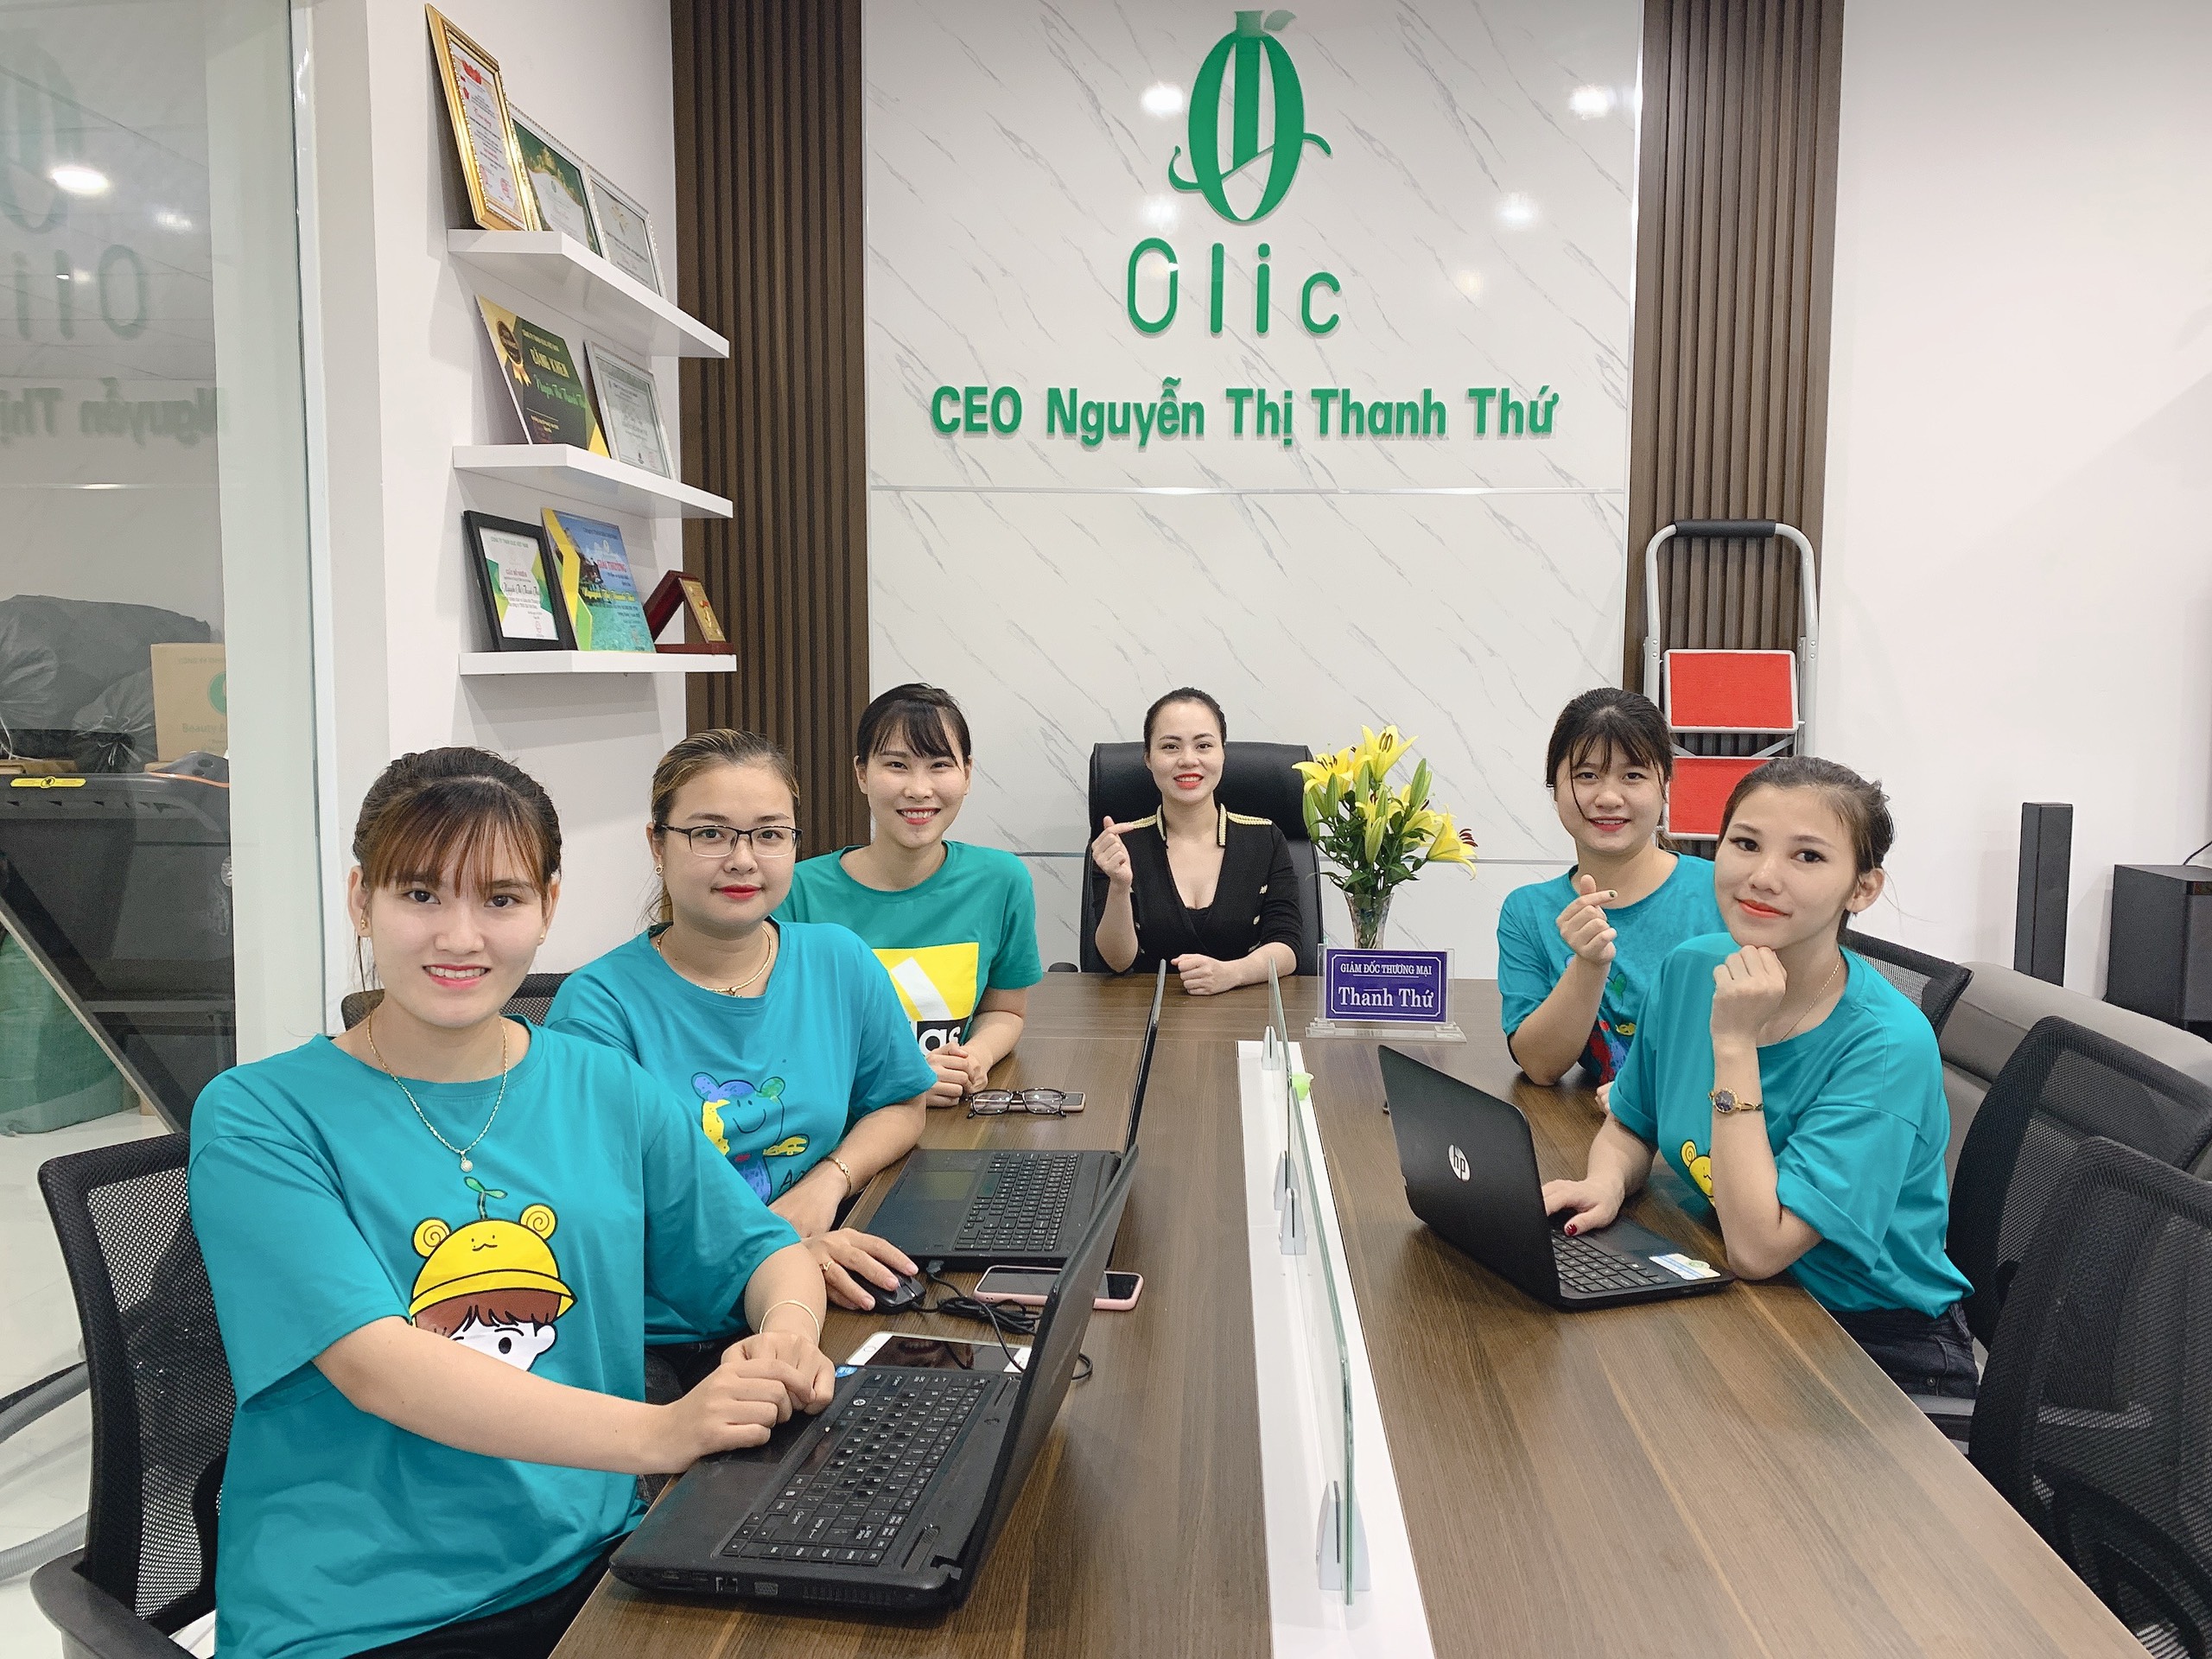 CEO Nguyễn Thị Thanh Thứ - Biểu tượng thành công của Olic